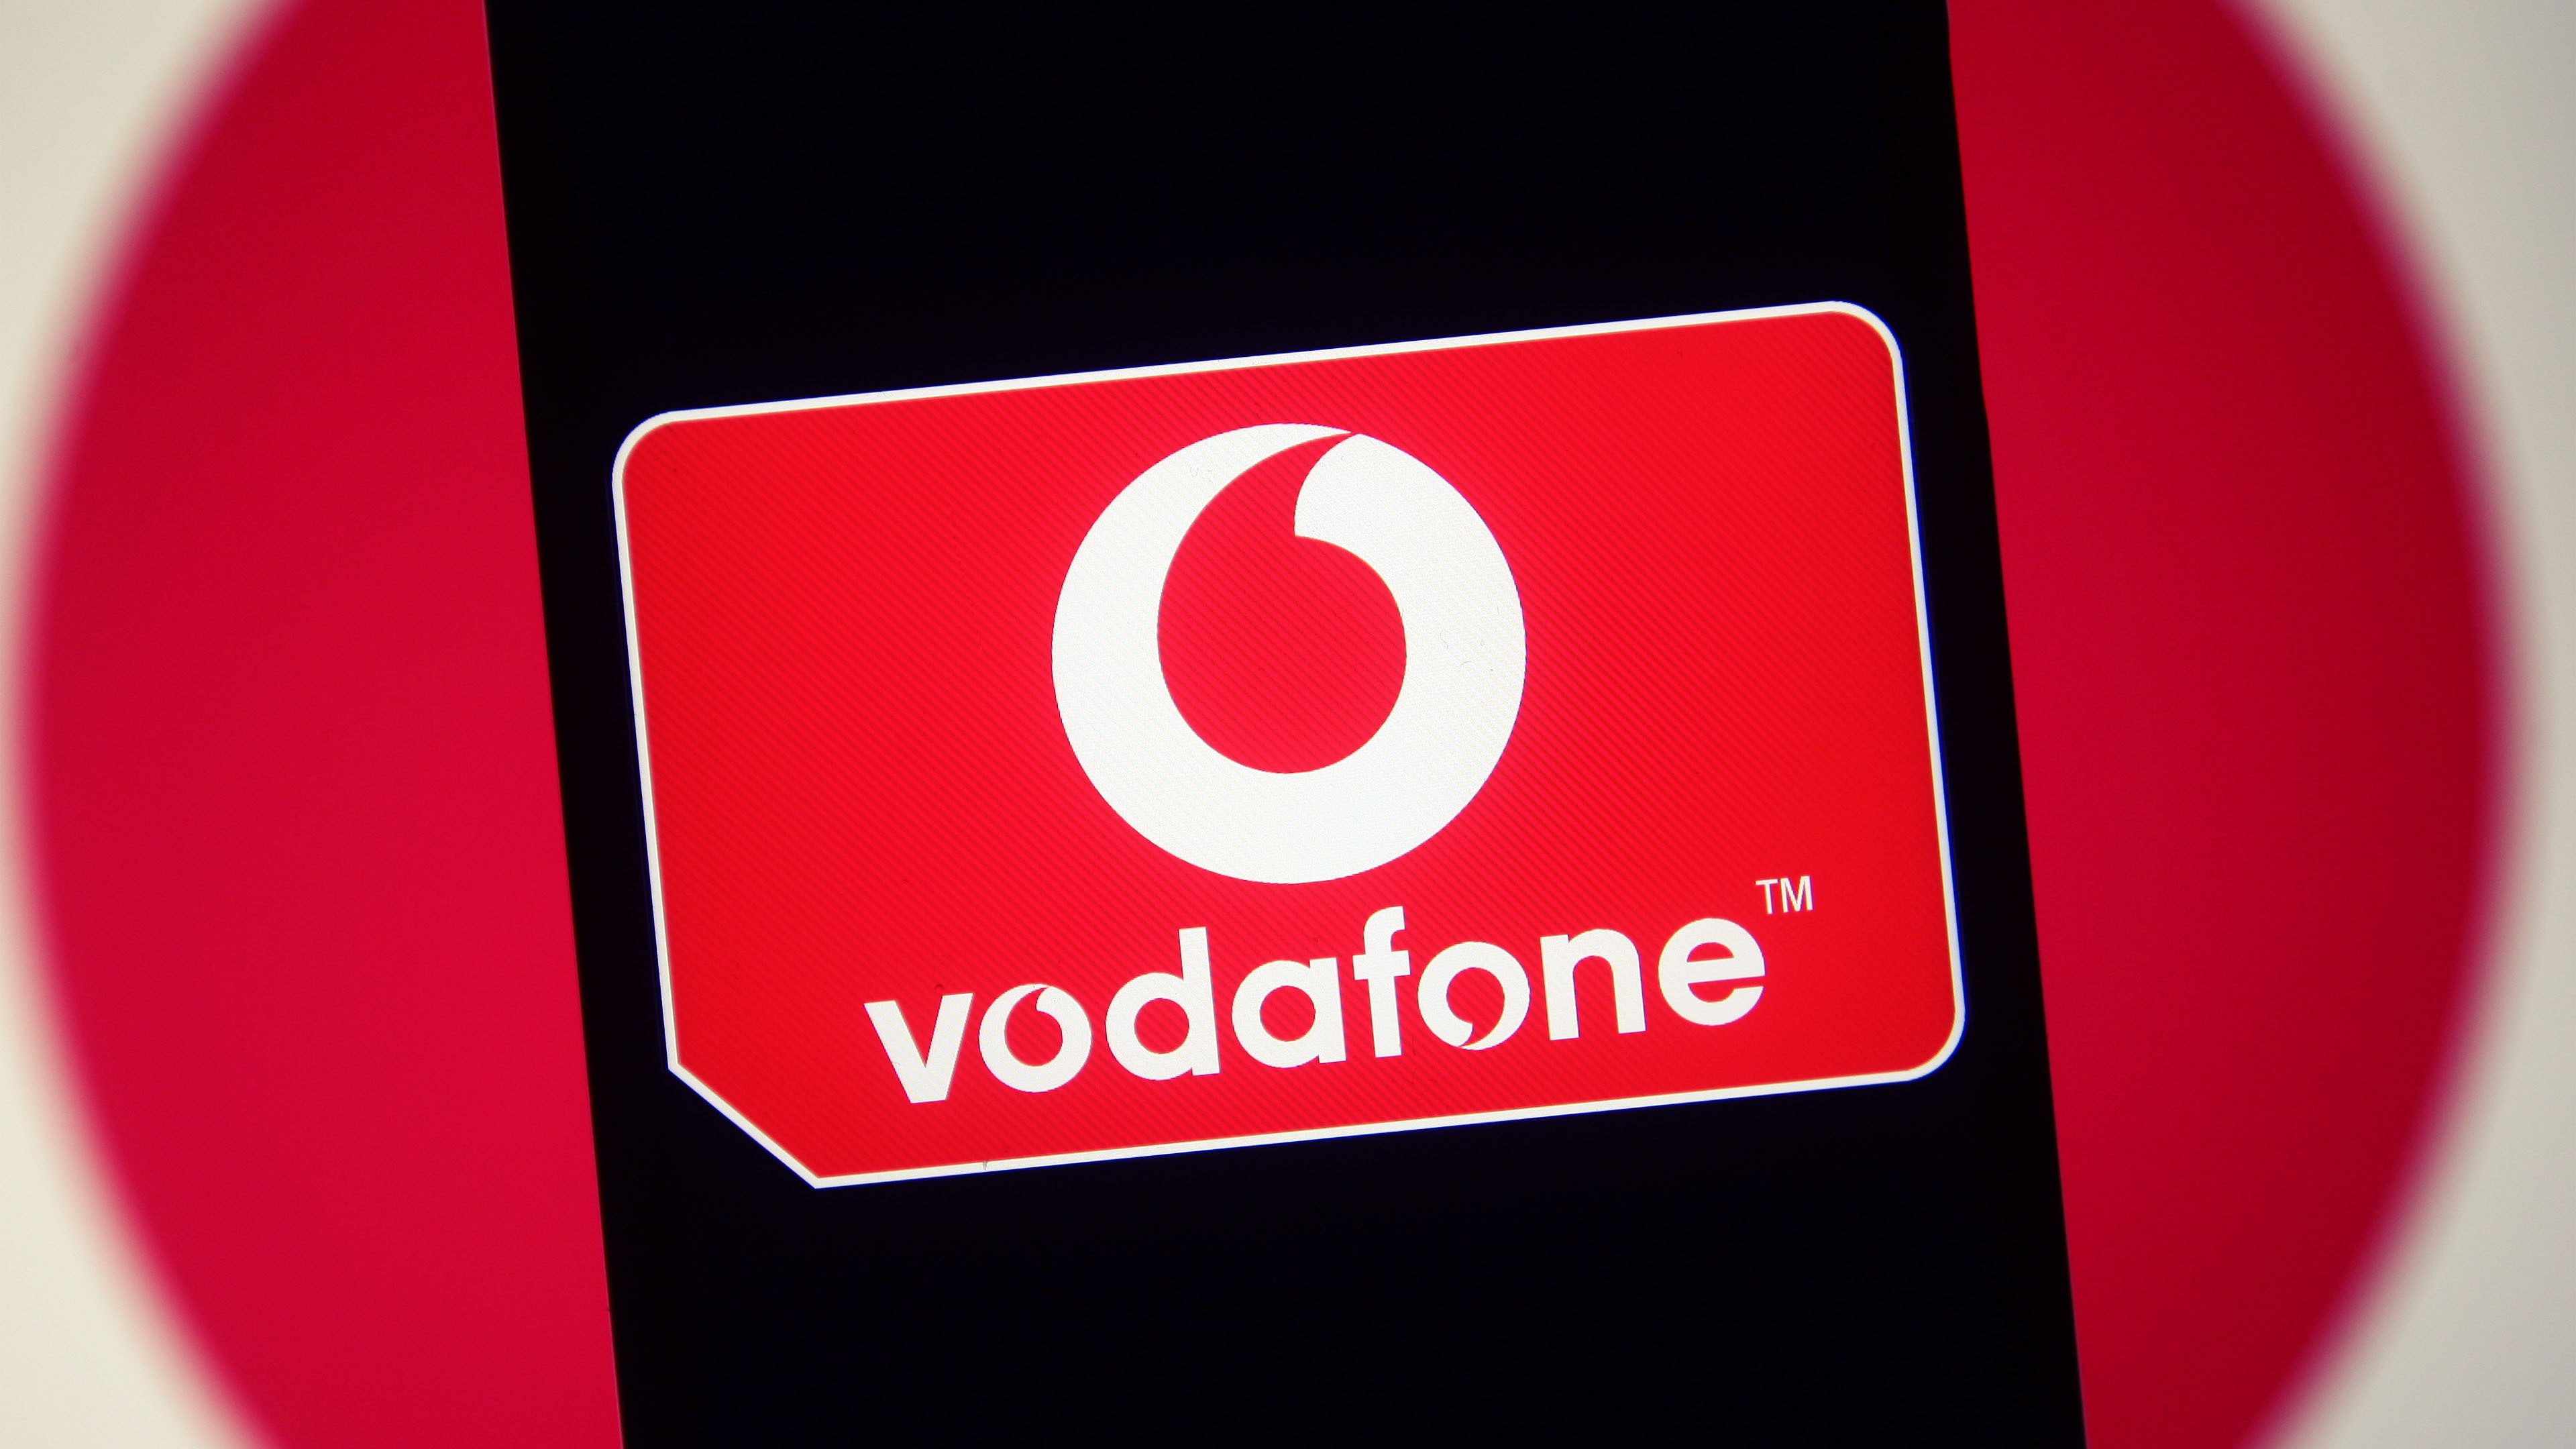 Die Vodafone Giga TV Cable Box 2 ist neuer Standard für Kabelkunden